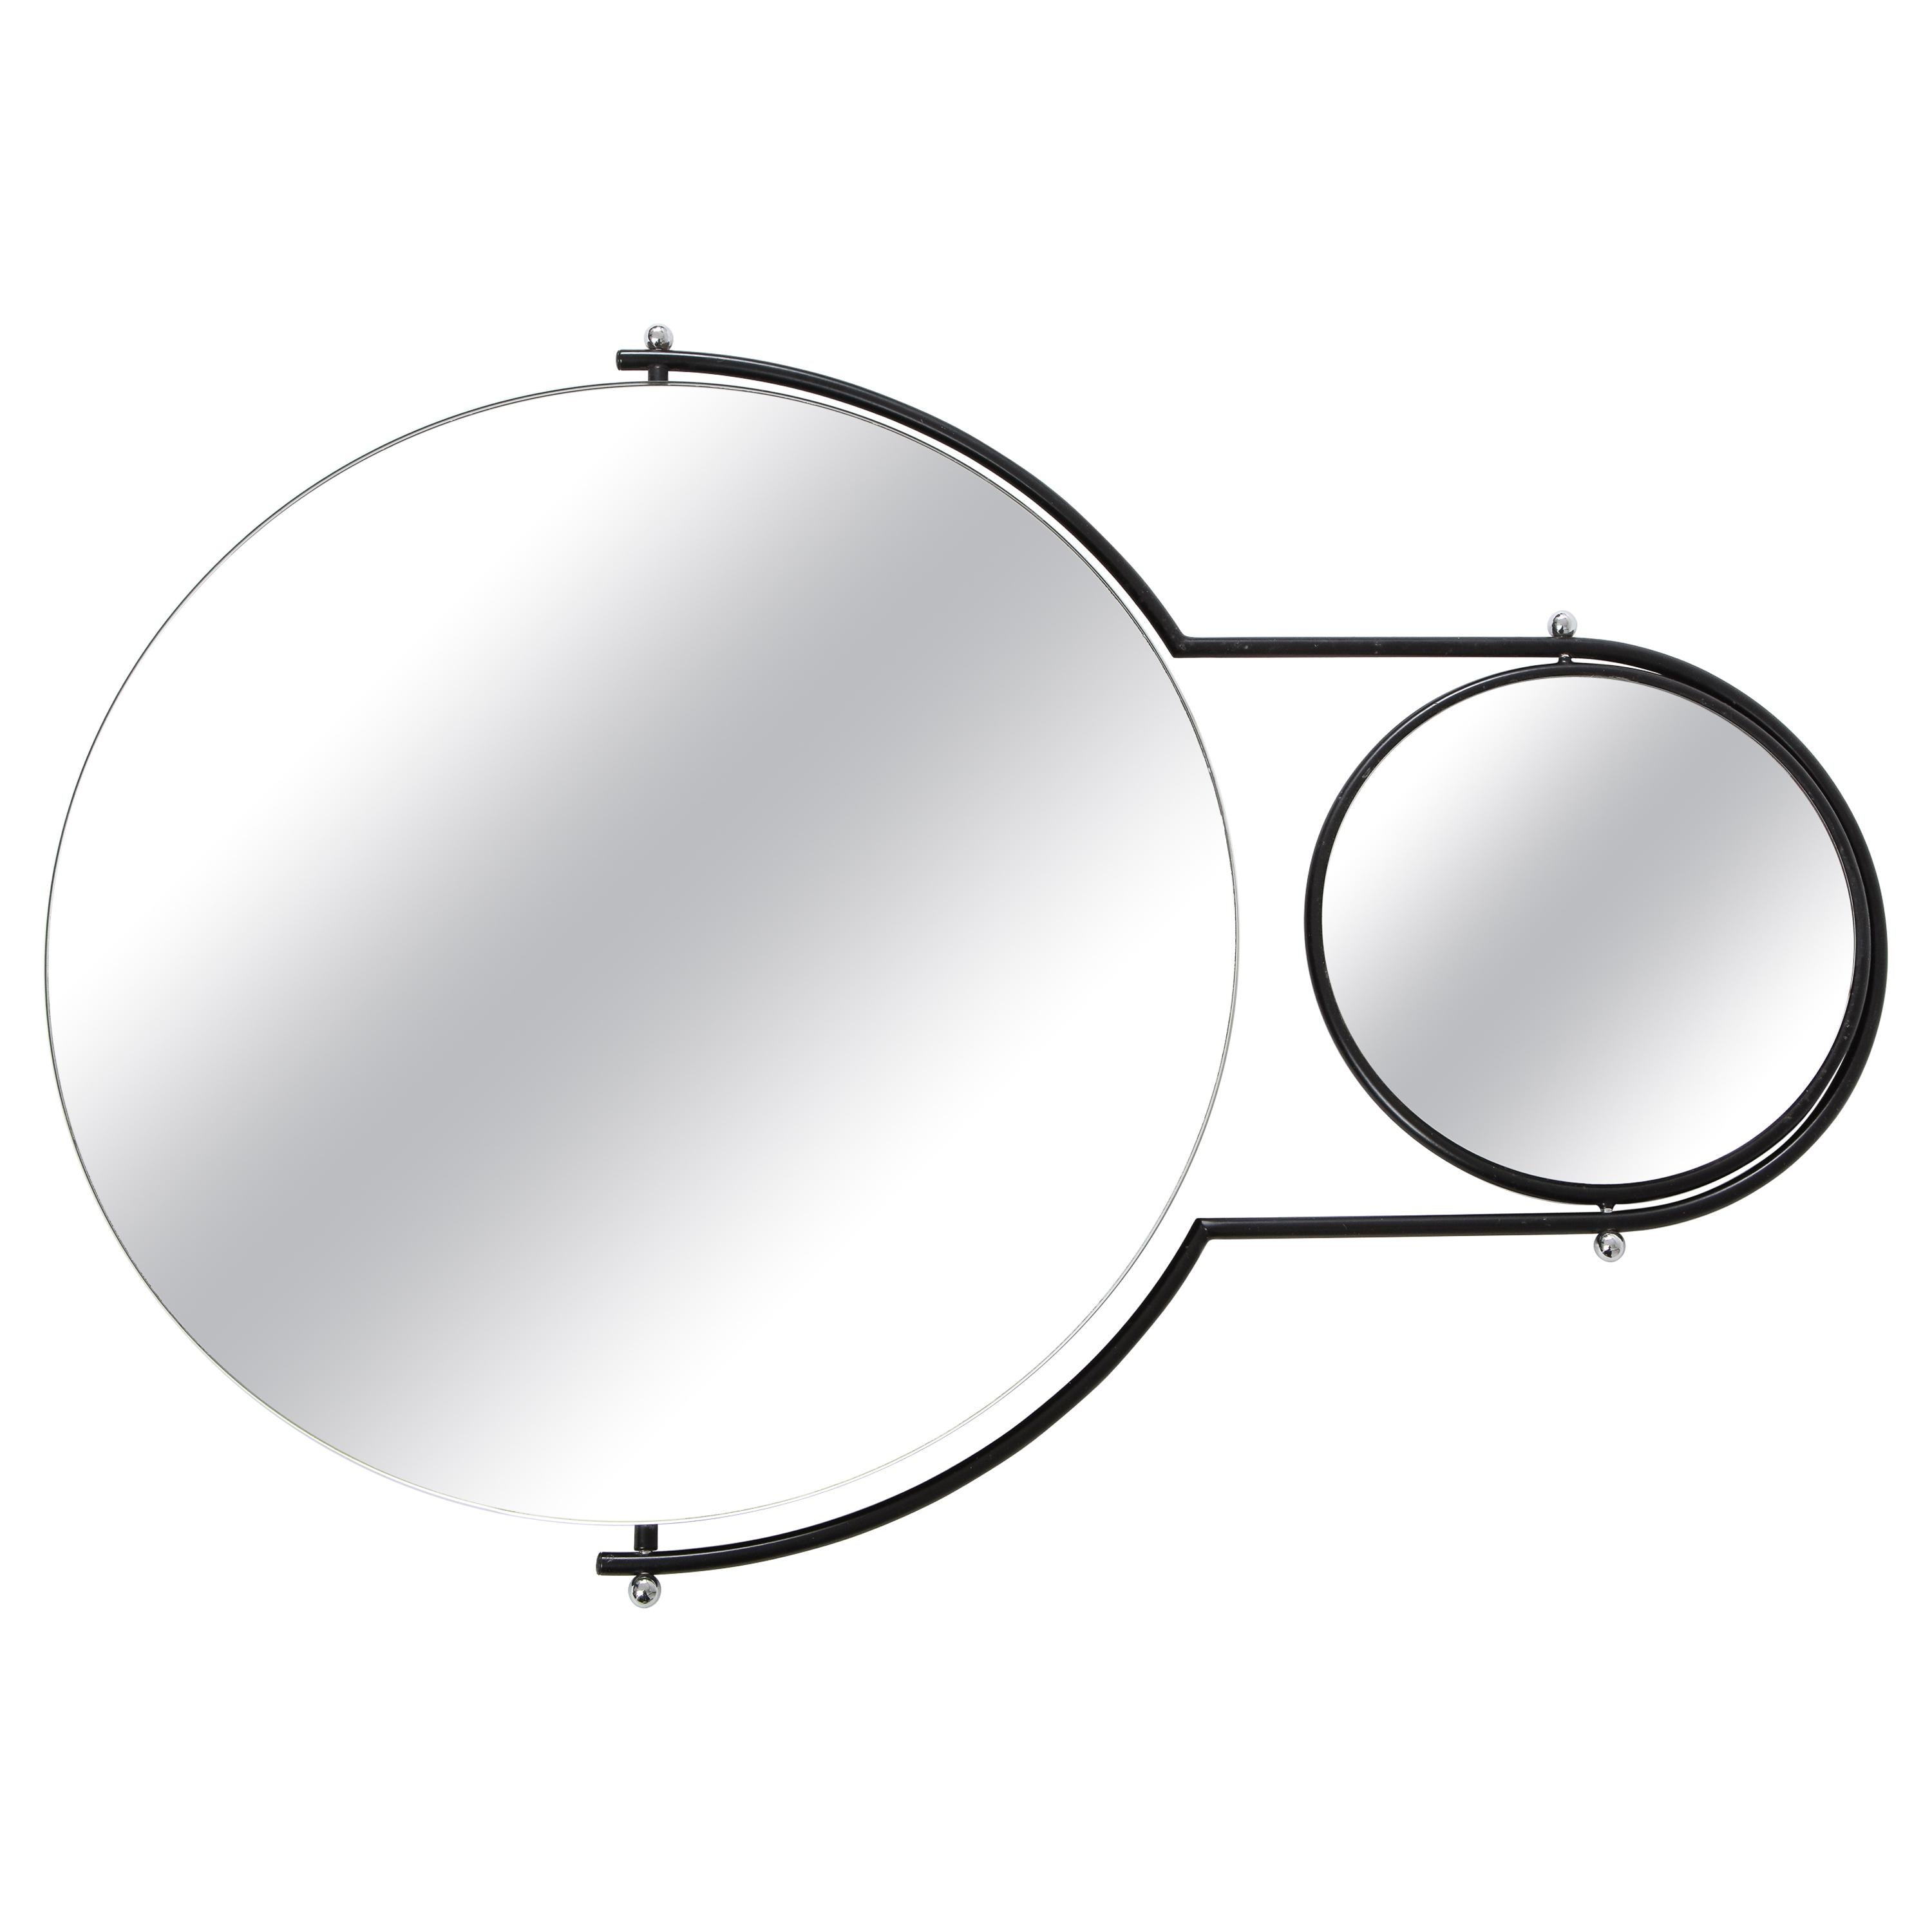 Modernist 'Orbit' Wall Mirror by Rodney Kinsman for Bieffeplast